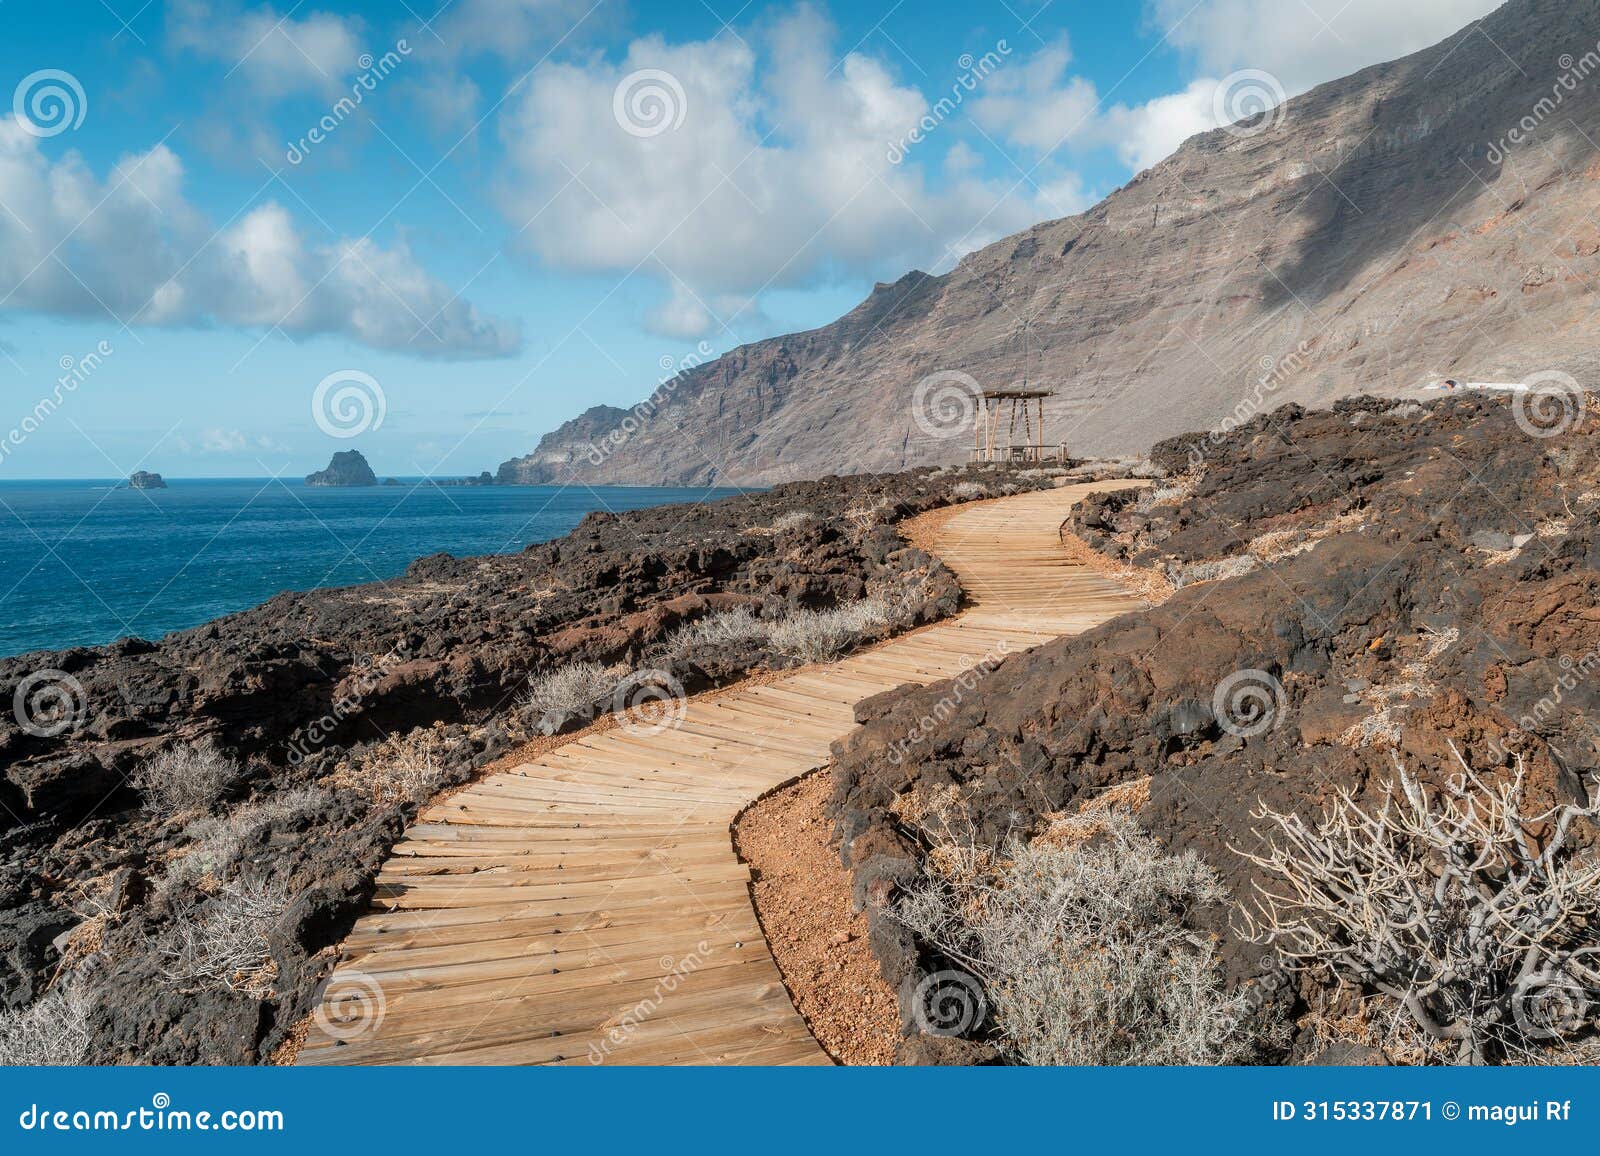 coastal path in las puntas. el hierro island. canary islands